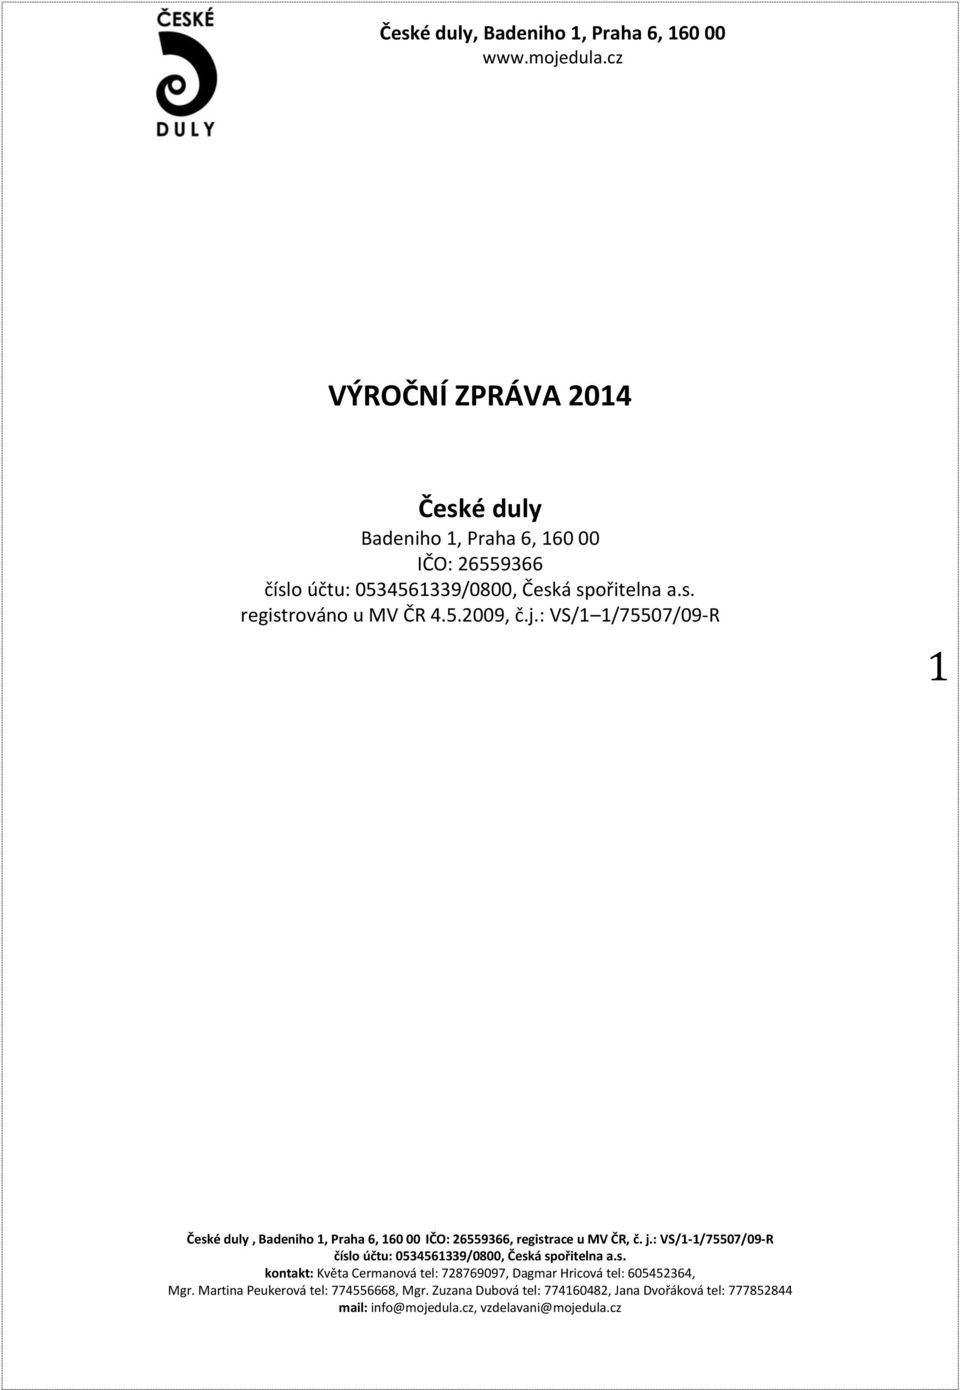 26559366 registrováno u MV ČR 4.